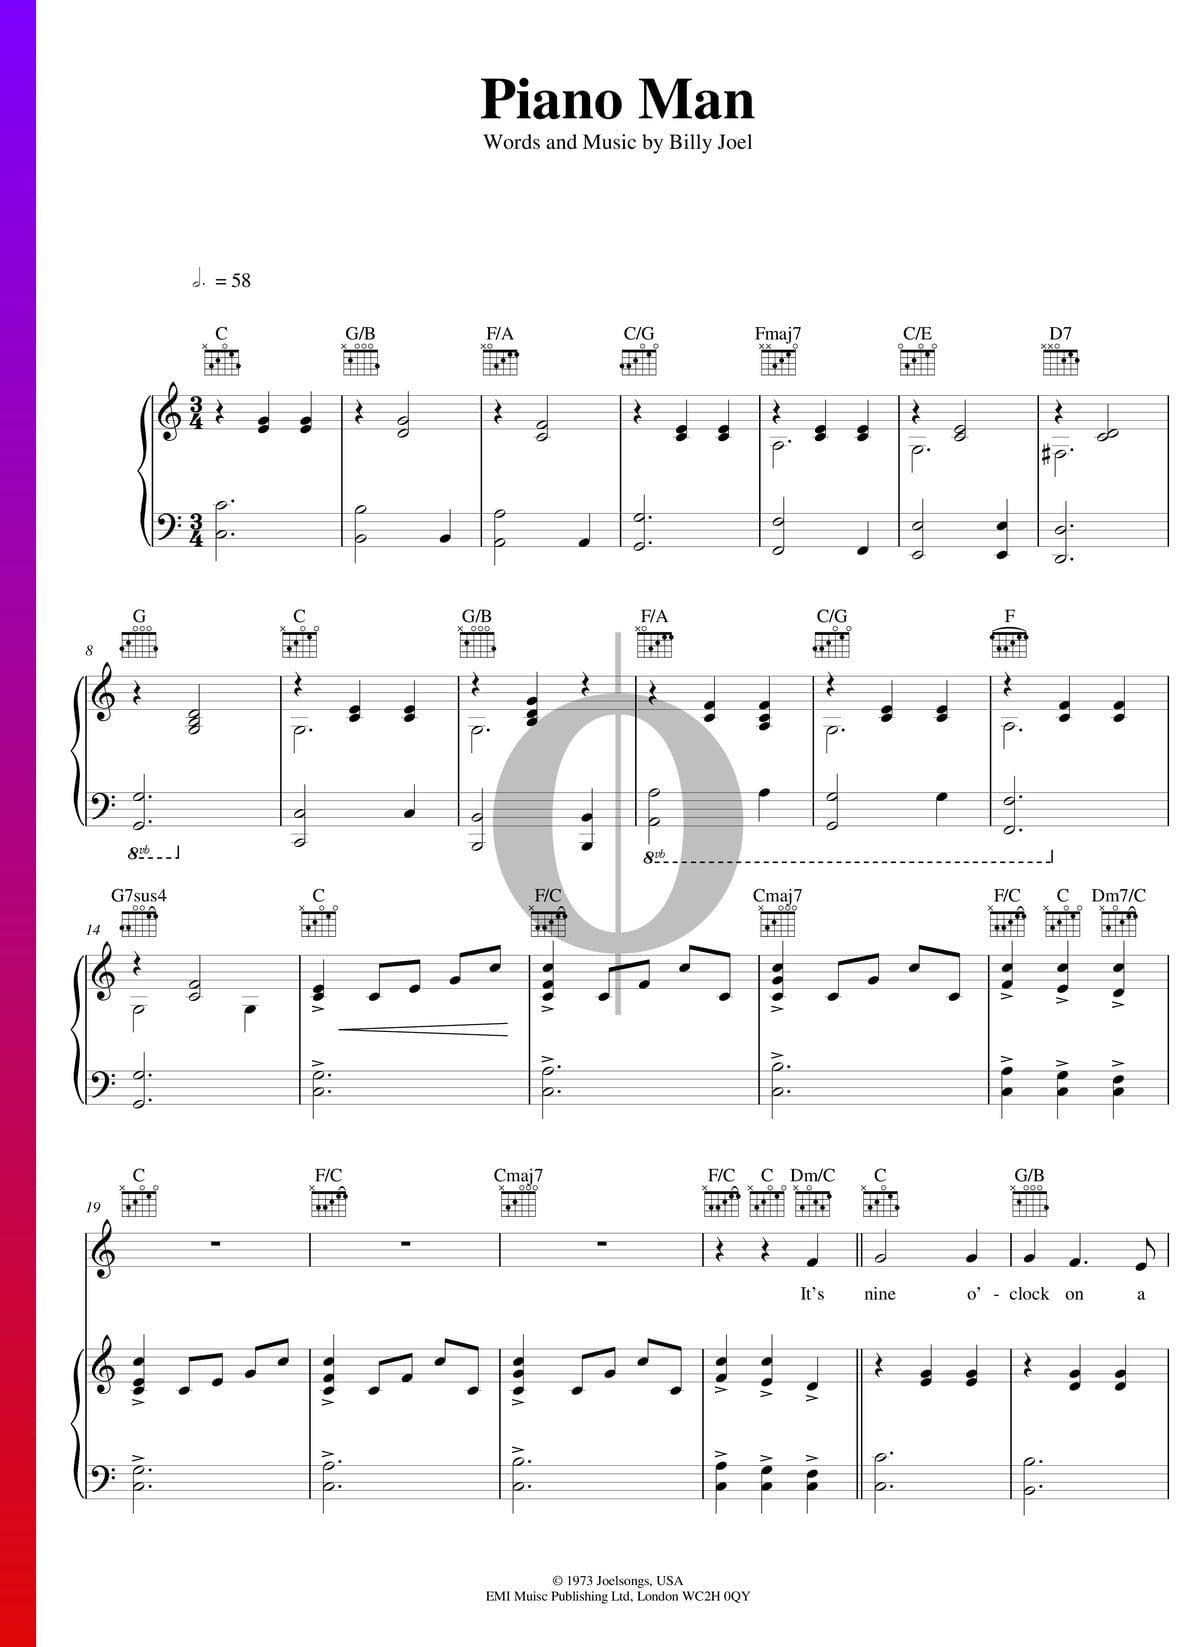 Piano Man Partitura » Billy Joel (Piano, Guitarra, Voz) | Descarga PDF